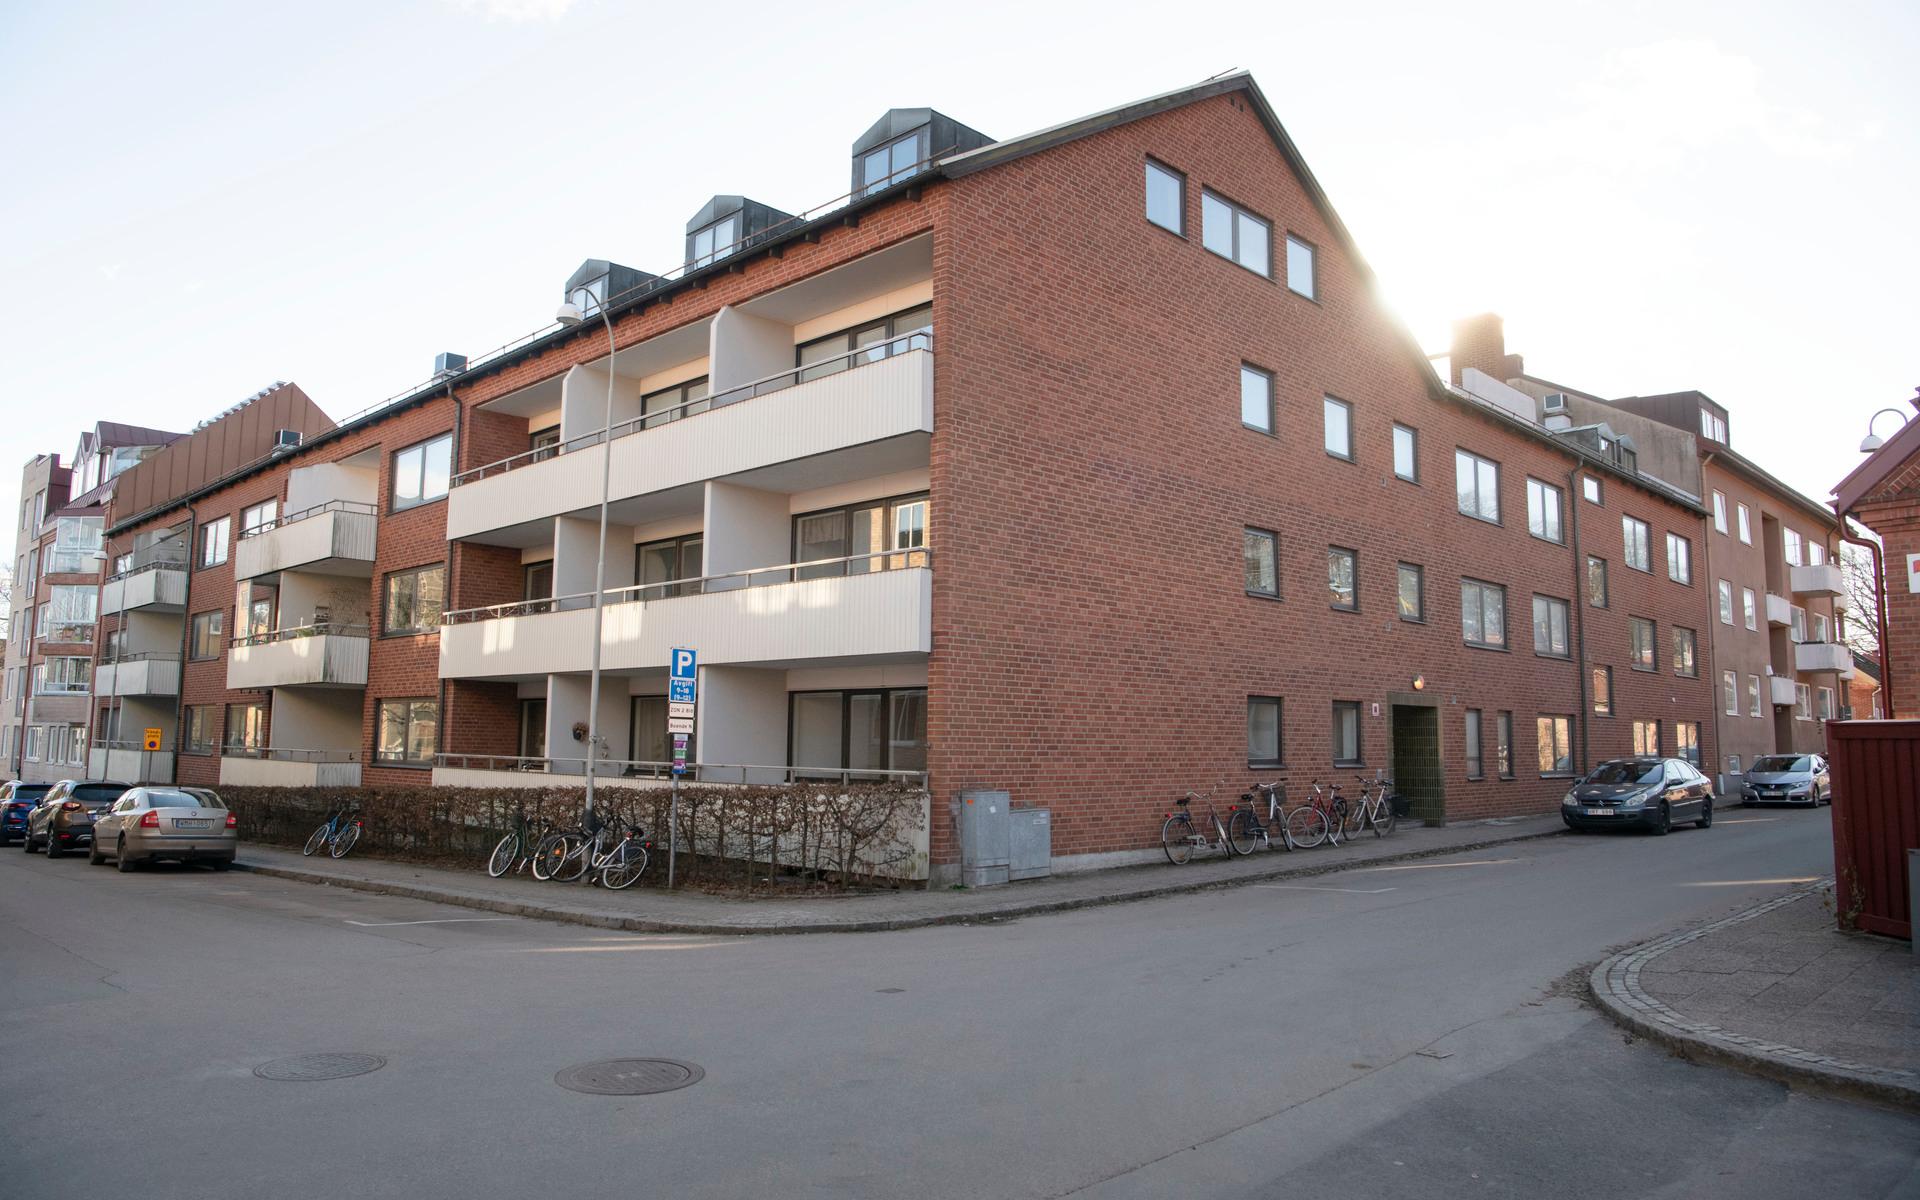 Det här hörnhuset med 30 lägenheter, som är byggt 1973 och har ingång från såväl Bergsgatan som Skolgatan, säljs nu av HFAB.